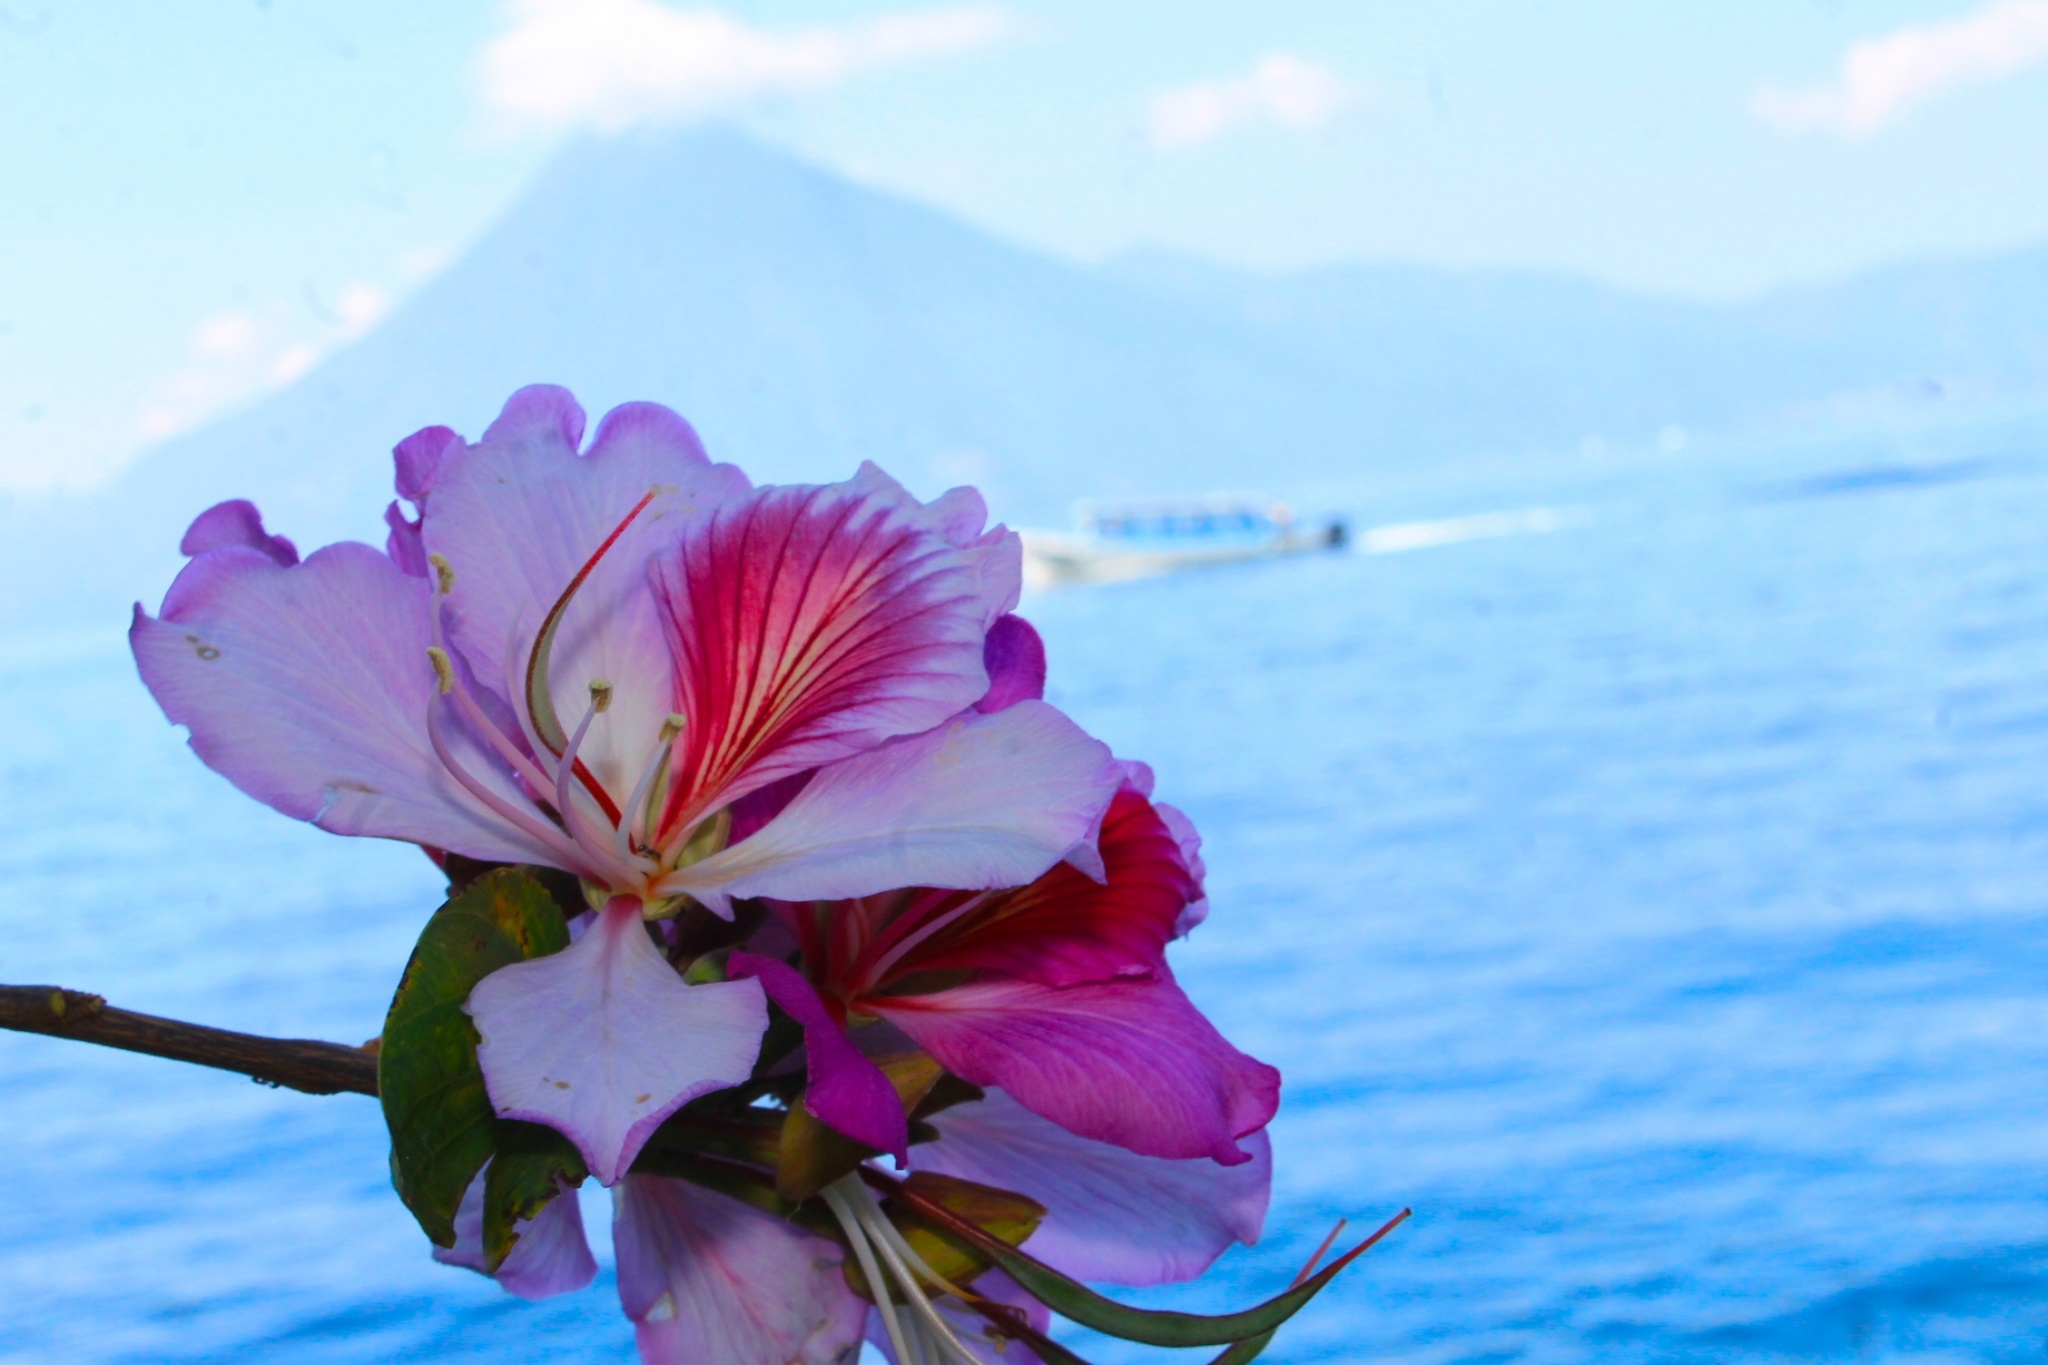 flower in front of Lake Atitlan, Guatemala